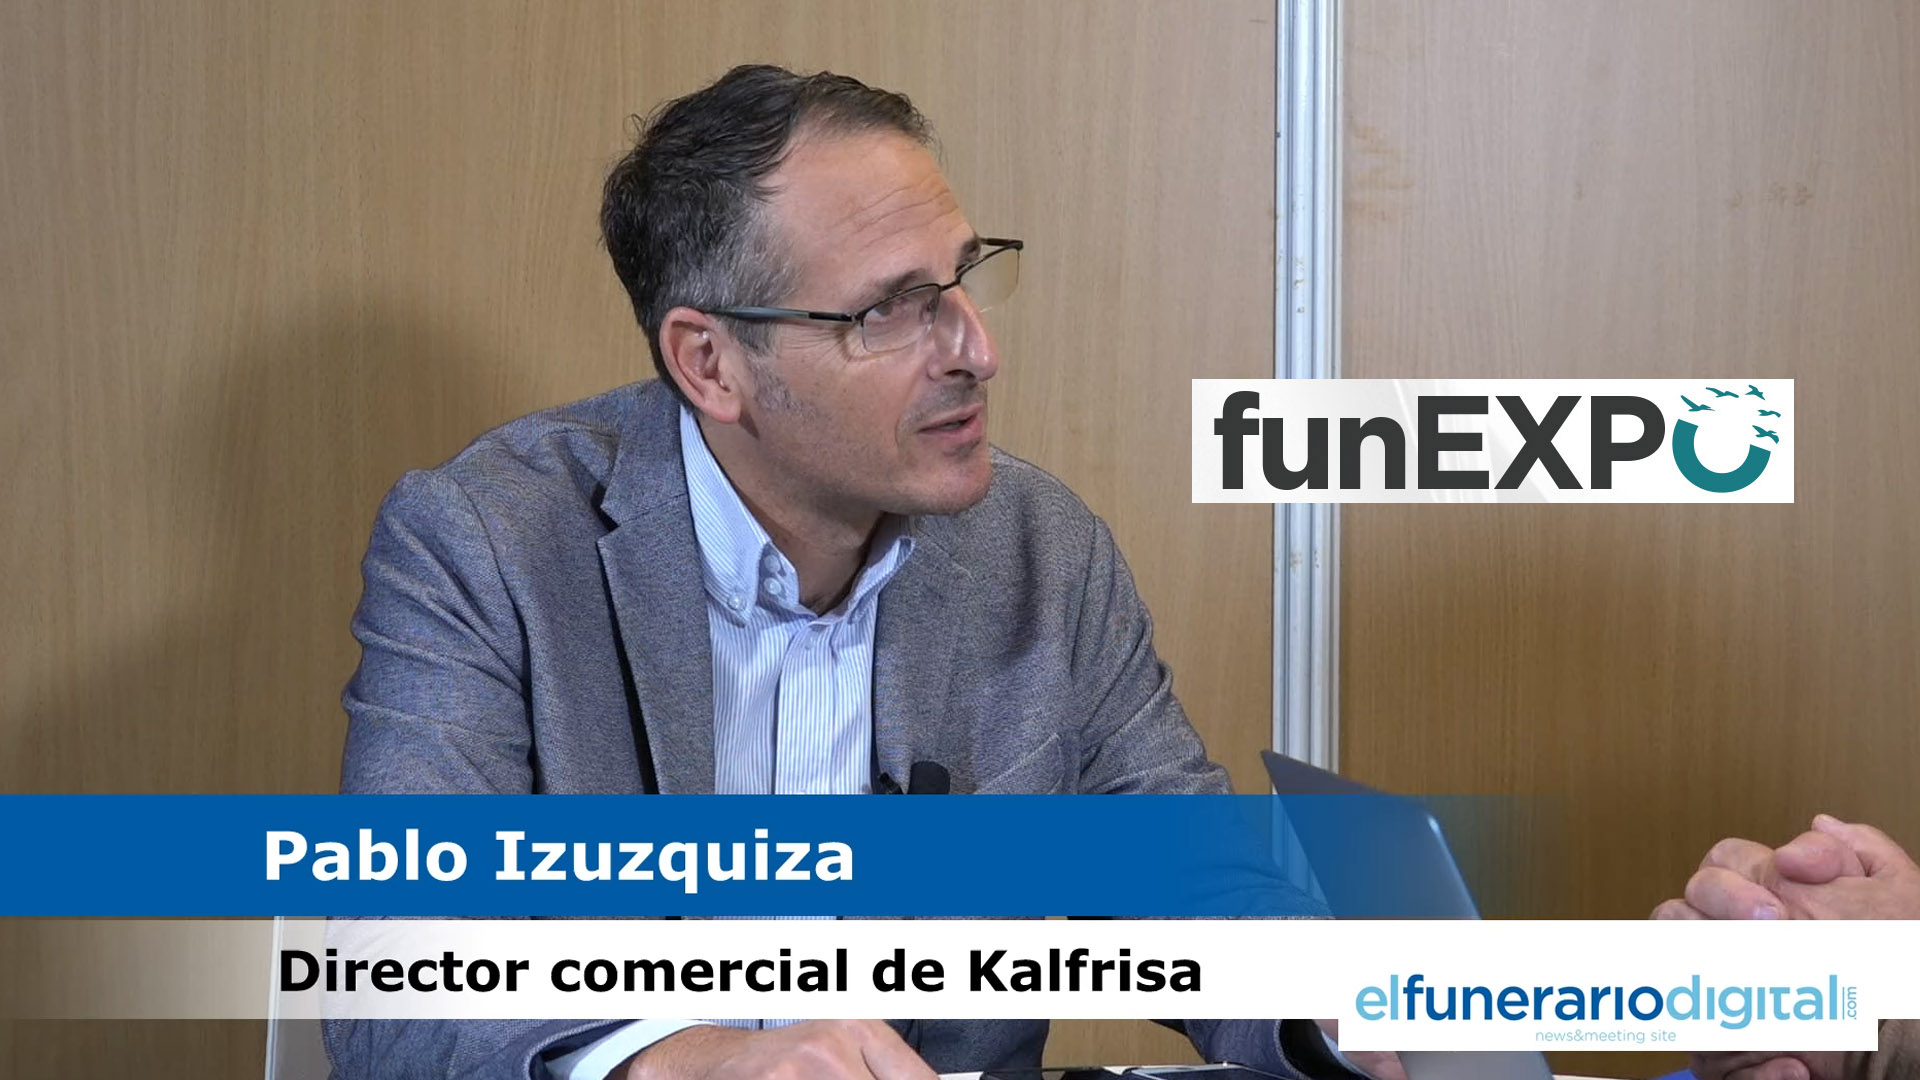 [VÍDEO] Funexpo Madrid: Hablamos con Pablo Izuzquiza, director comercial de Kalfrisa